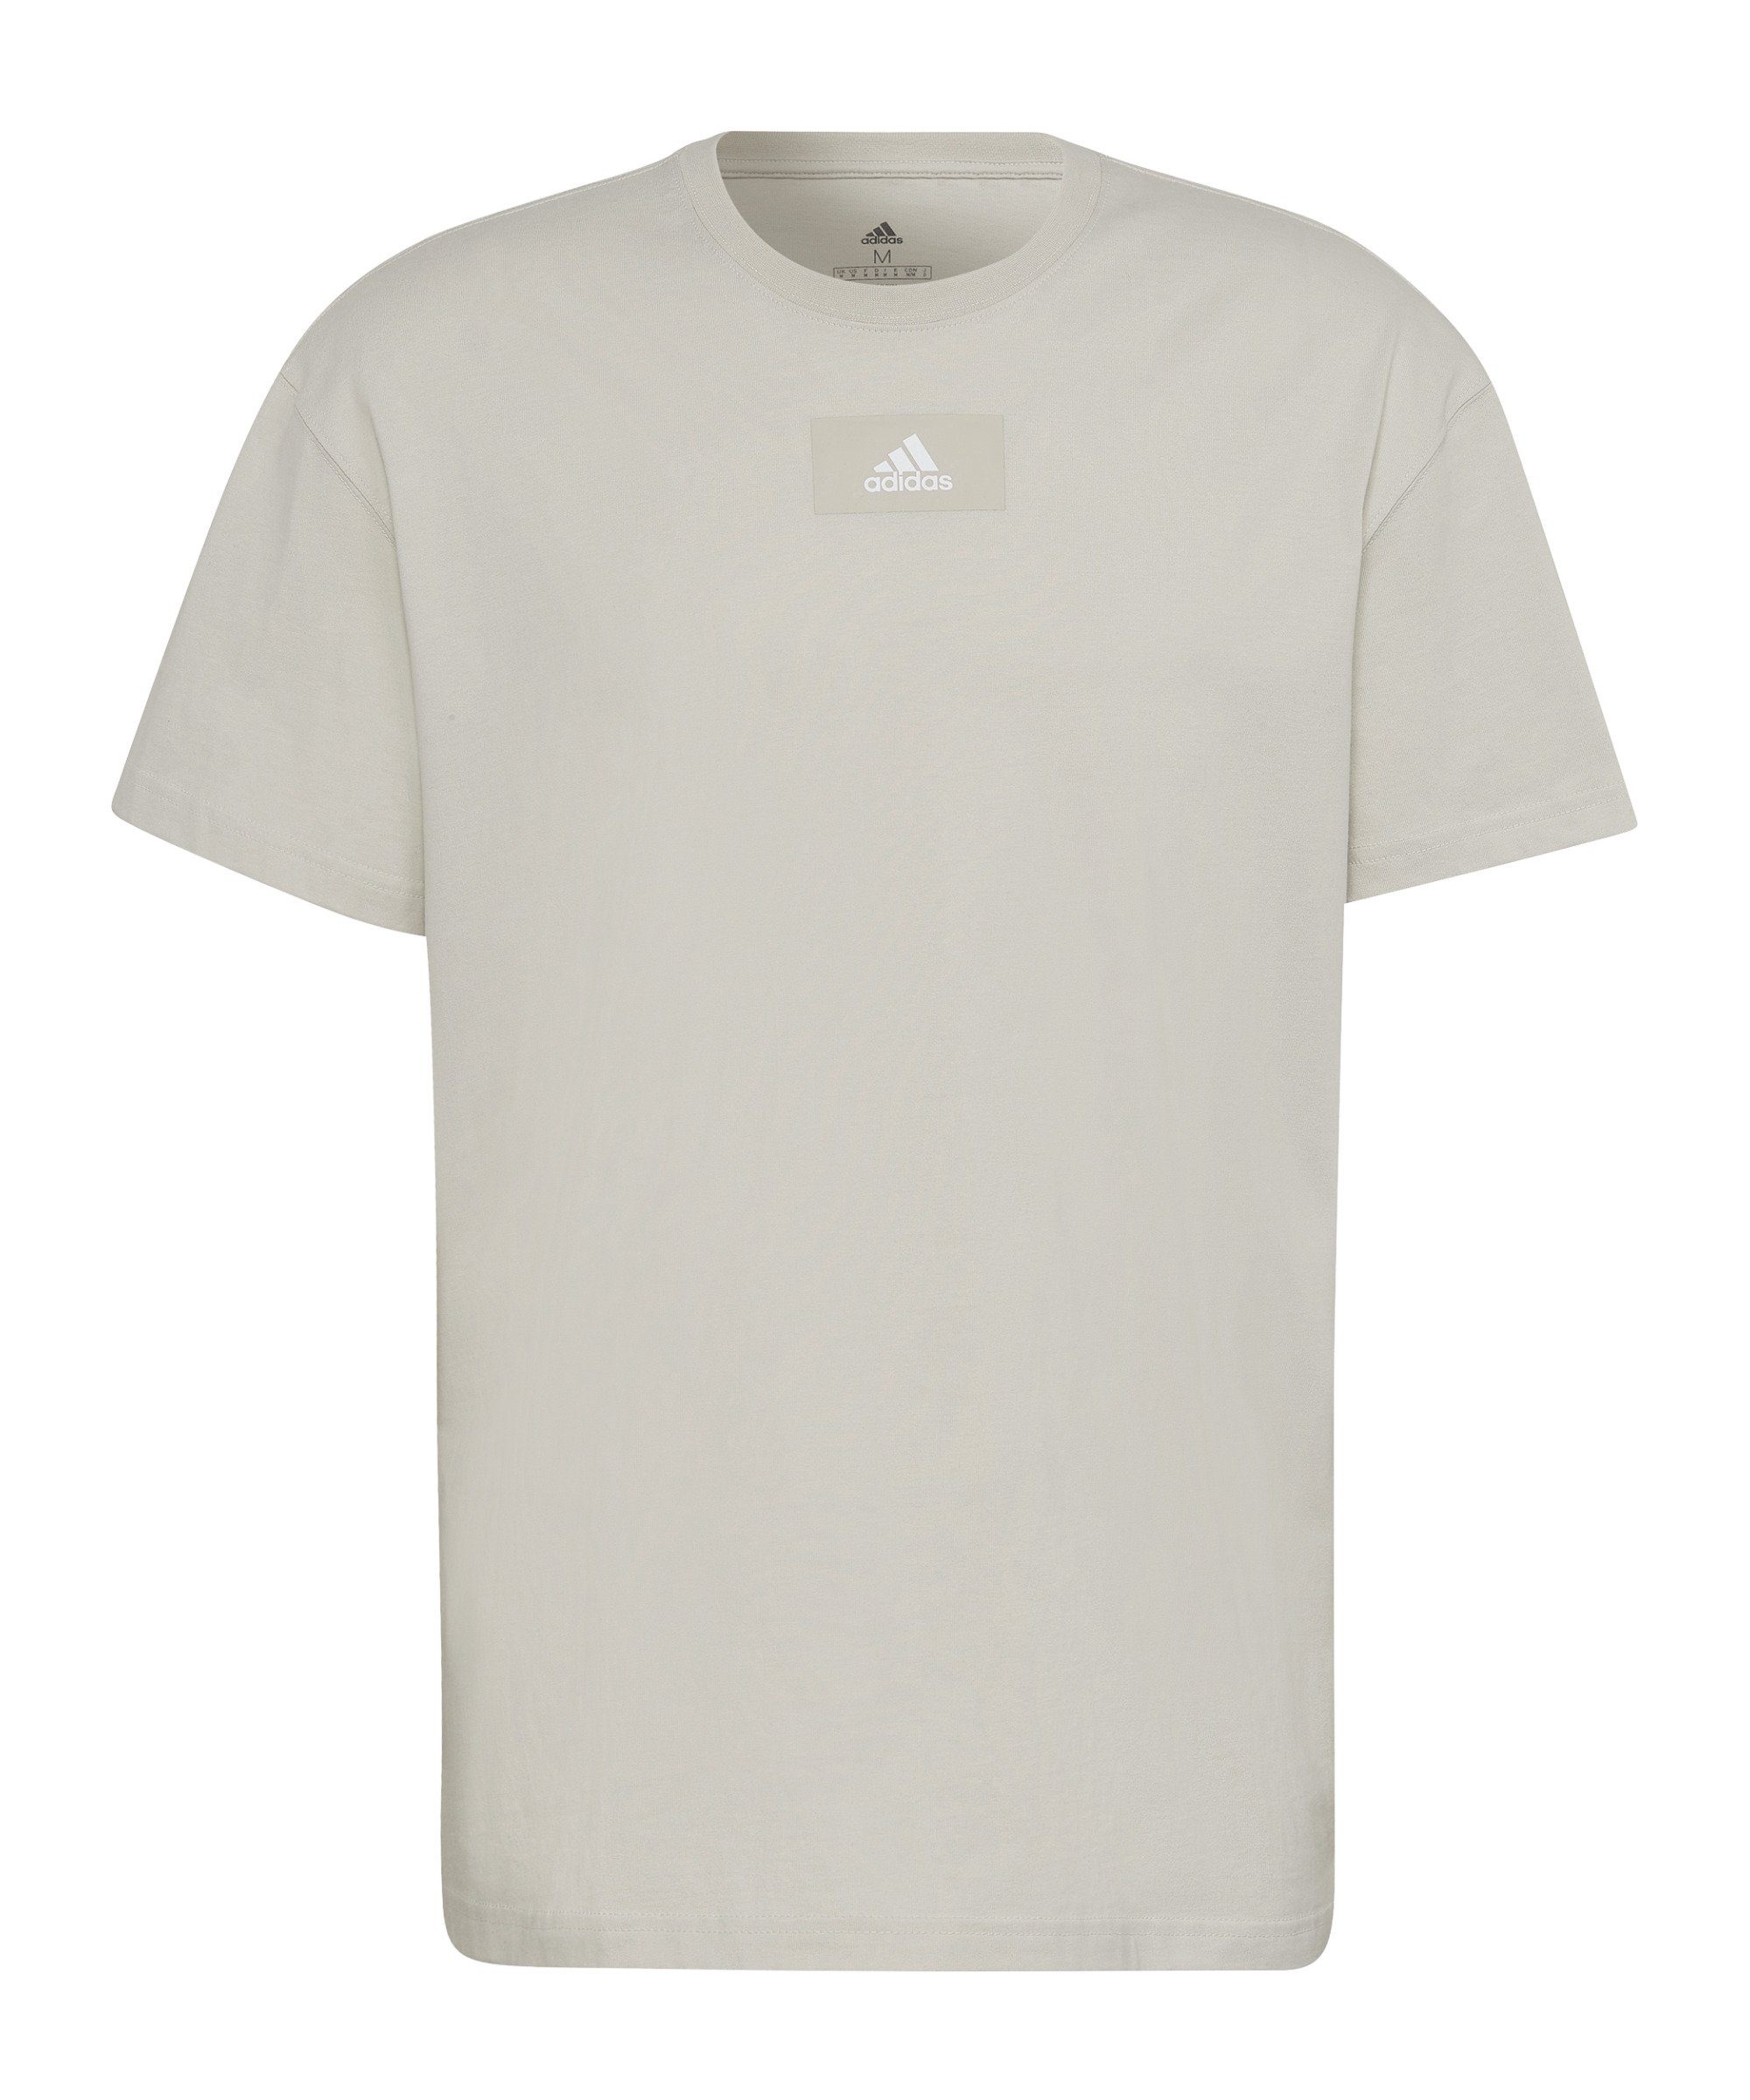 T-Shirt grau FV default T-Shirt Performance adidas